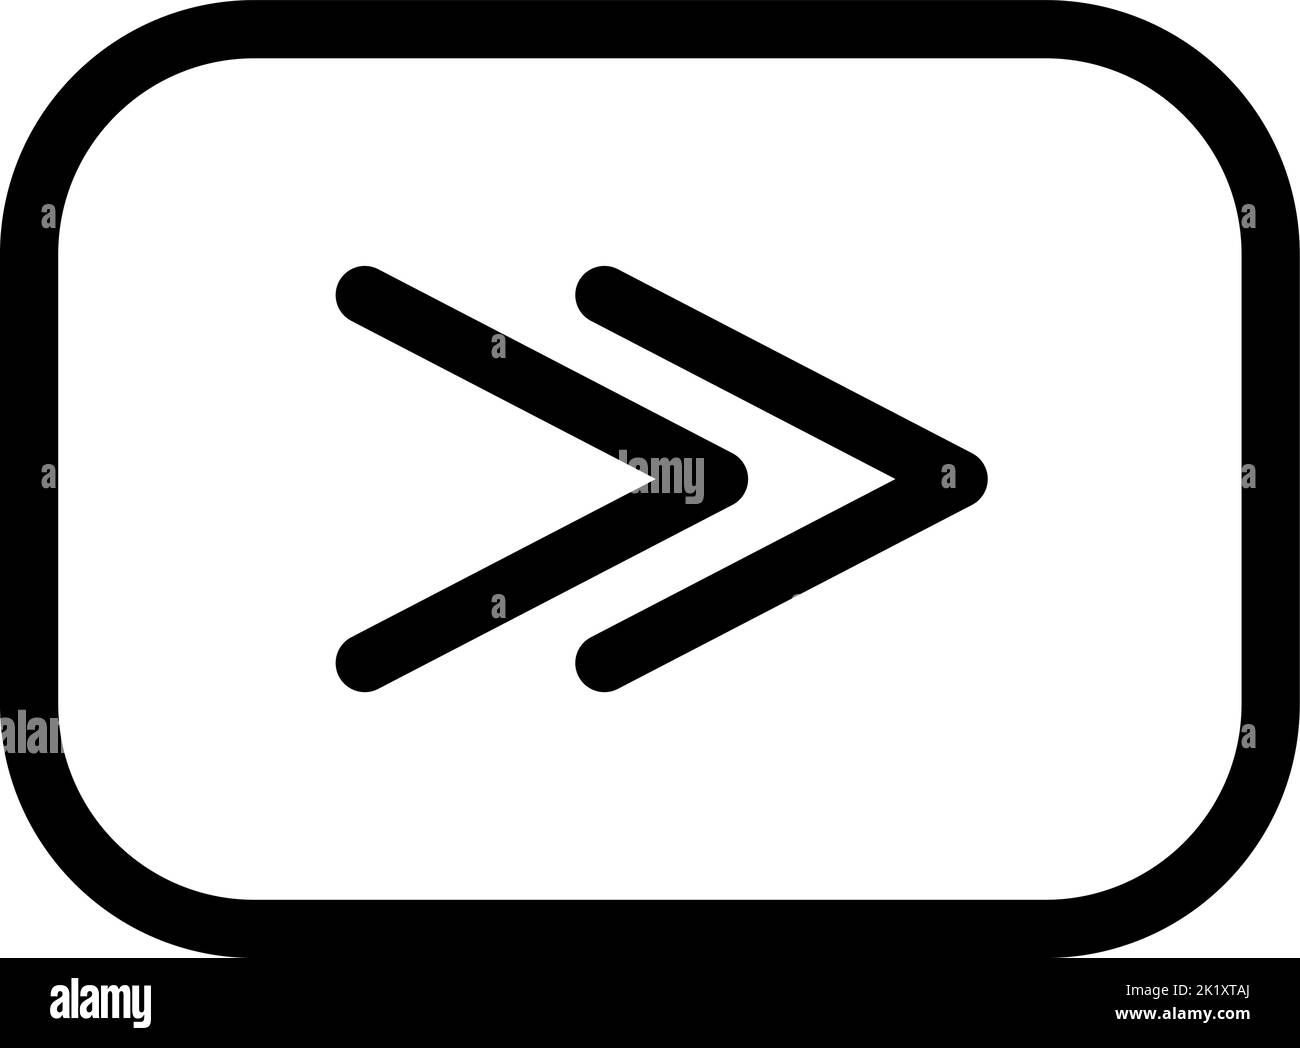 Icona del logo vettoriale di avanzamento rapido. Stile Symbol in Line Art per elementi di design, presentazione, siti Web o app mobili. Illustrazione dei segnali. Grafica pixel Illustrazione Vettoriale